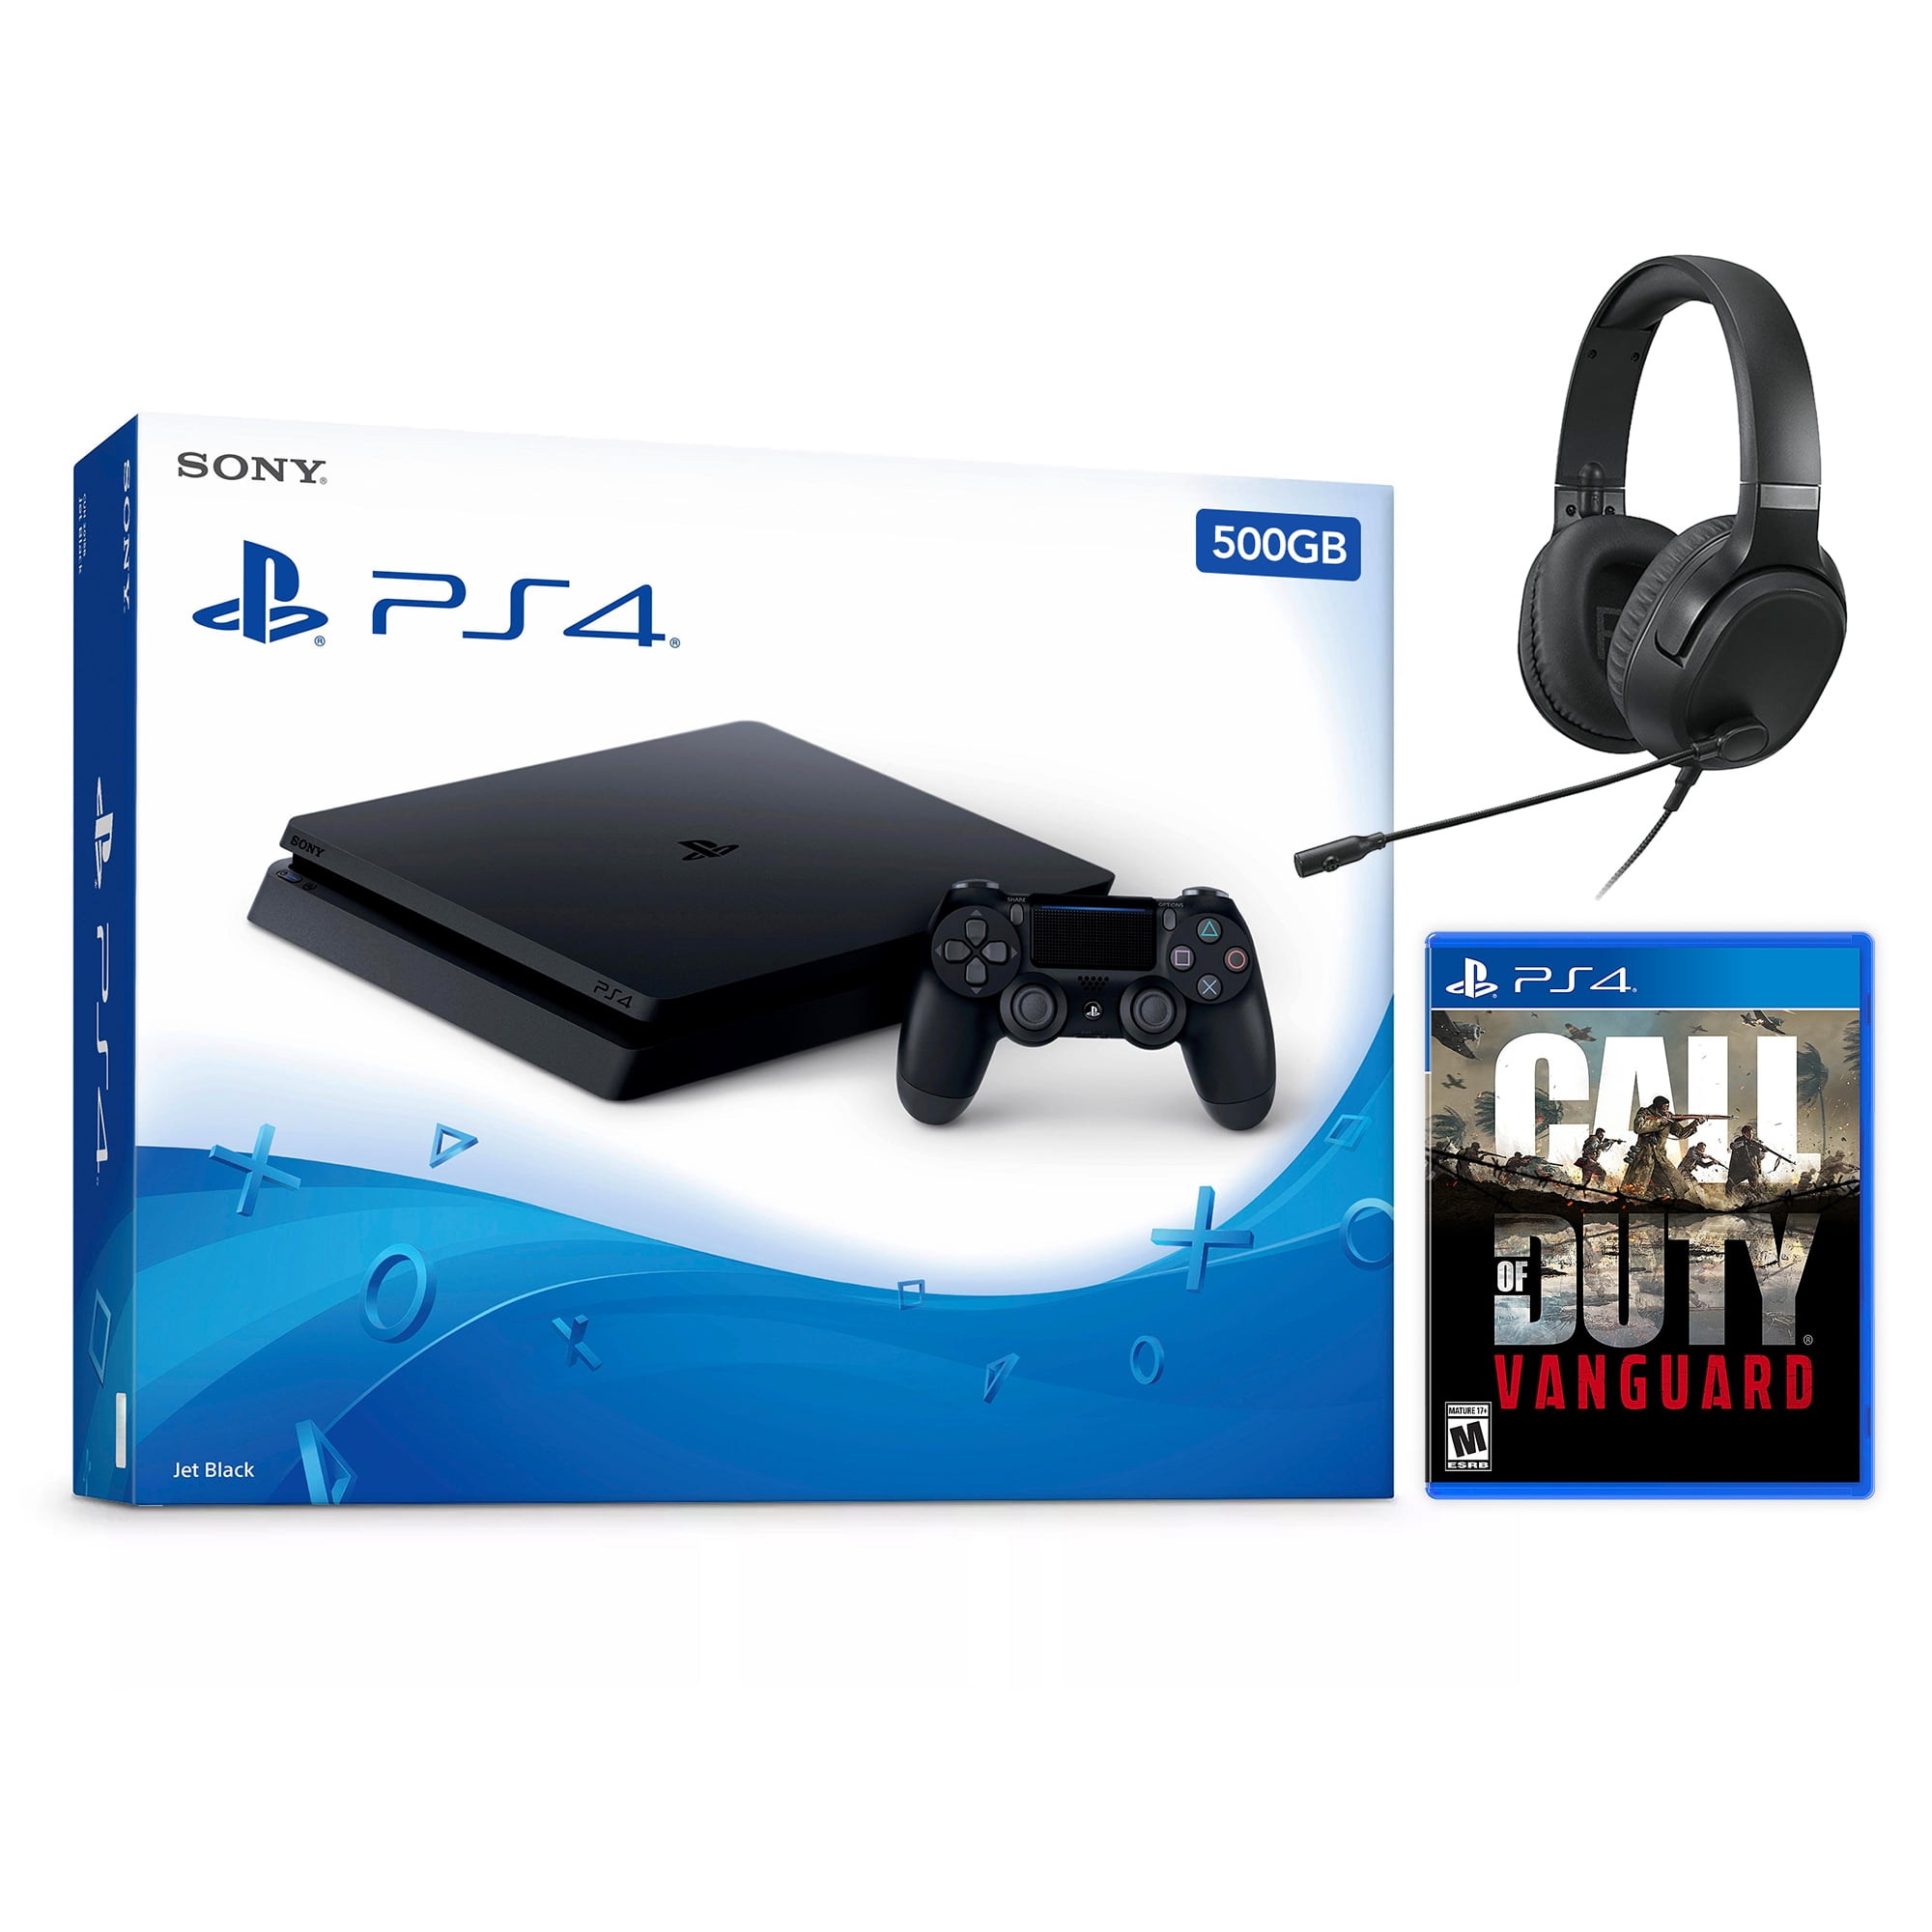 Doorzichtig Verkeersopstopping begrijpen Sony PlayStation 4 Slim 500GB Call of Duty Infinite Warfare Bundle, White,  3001519 - Walmart.com